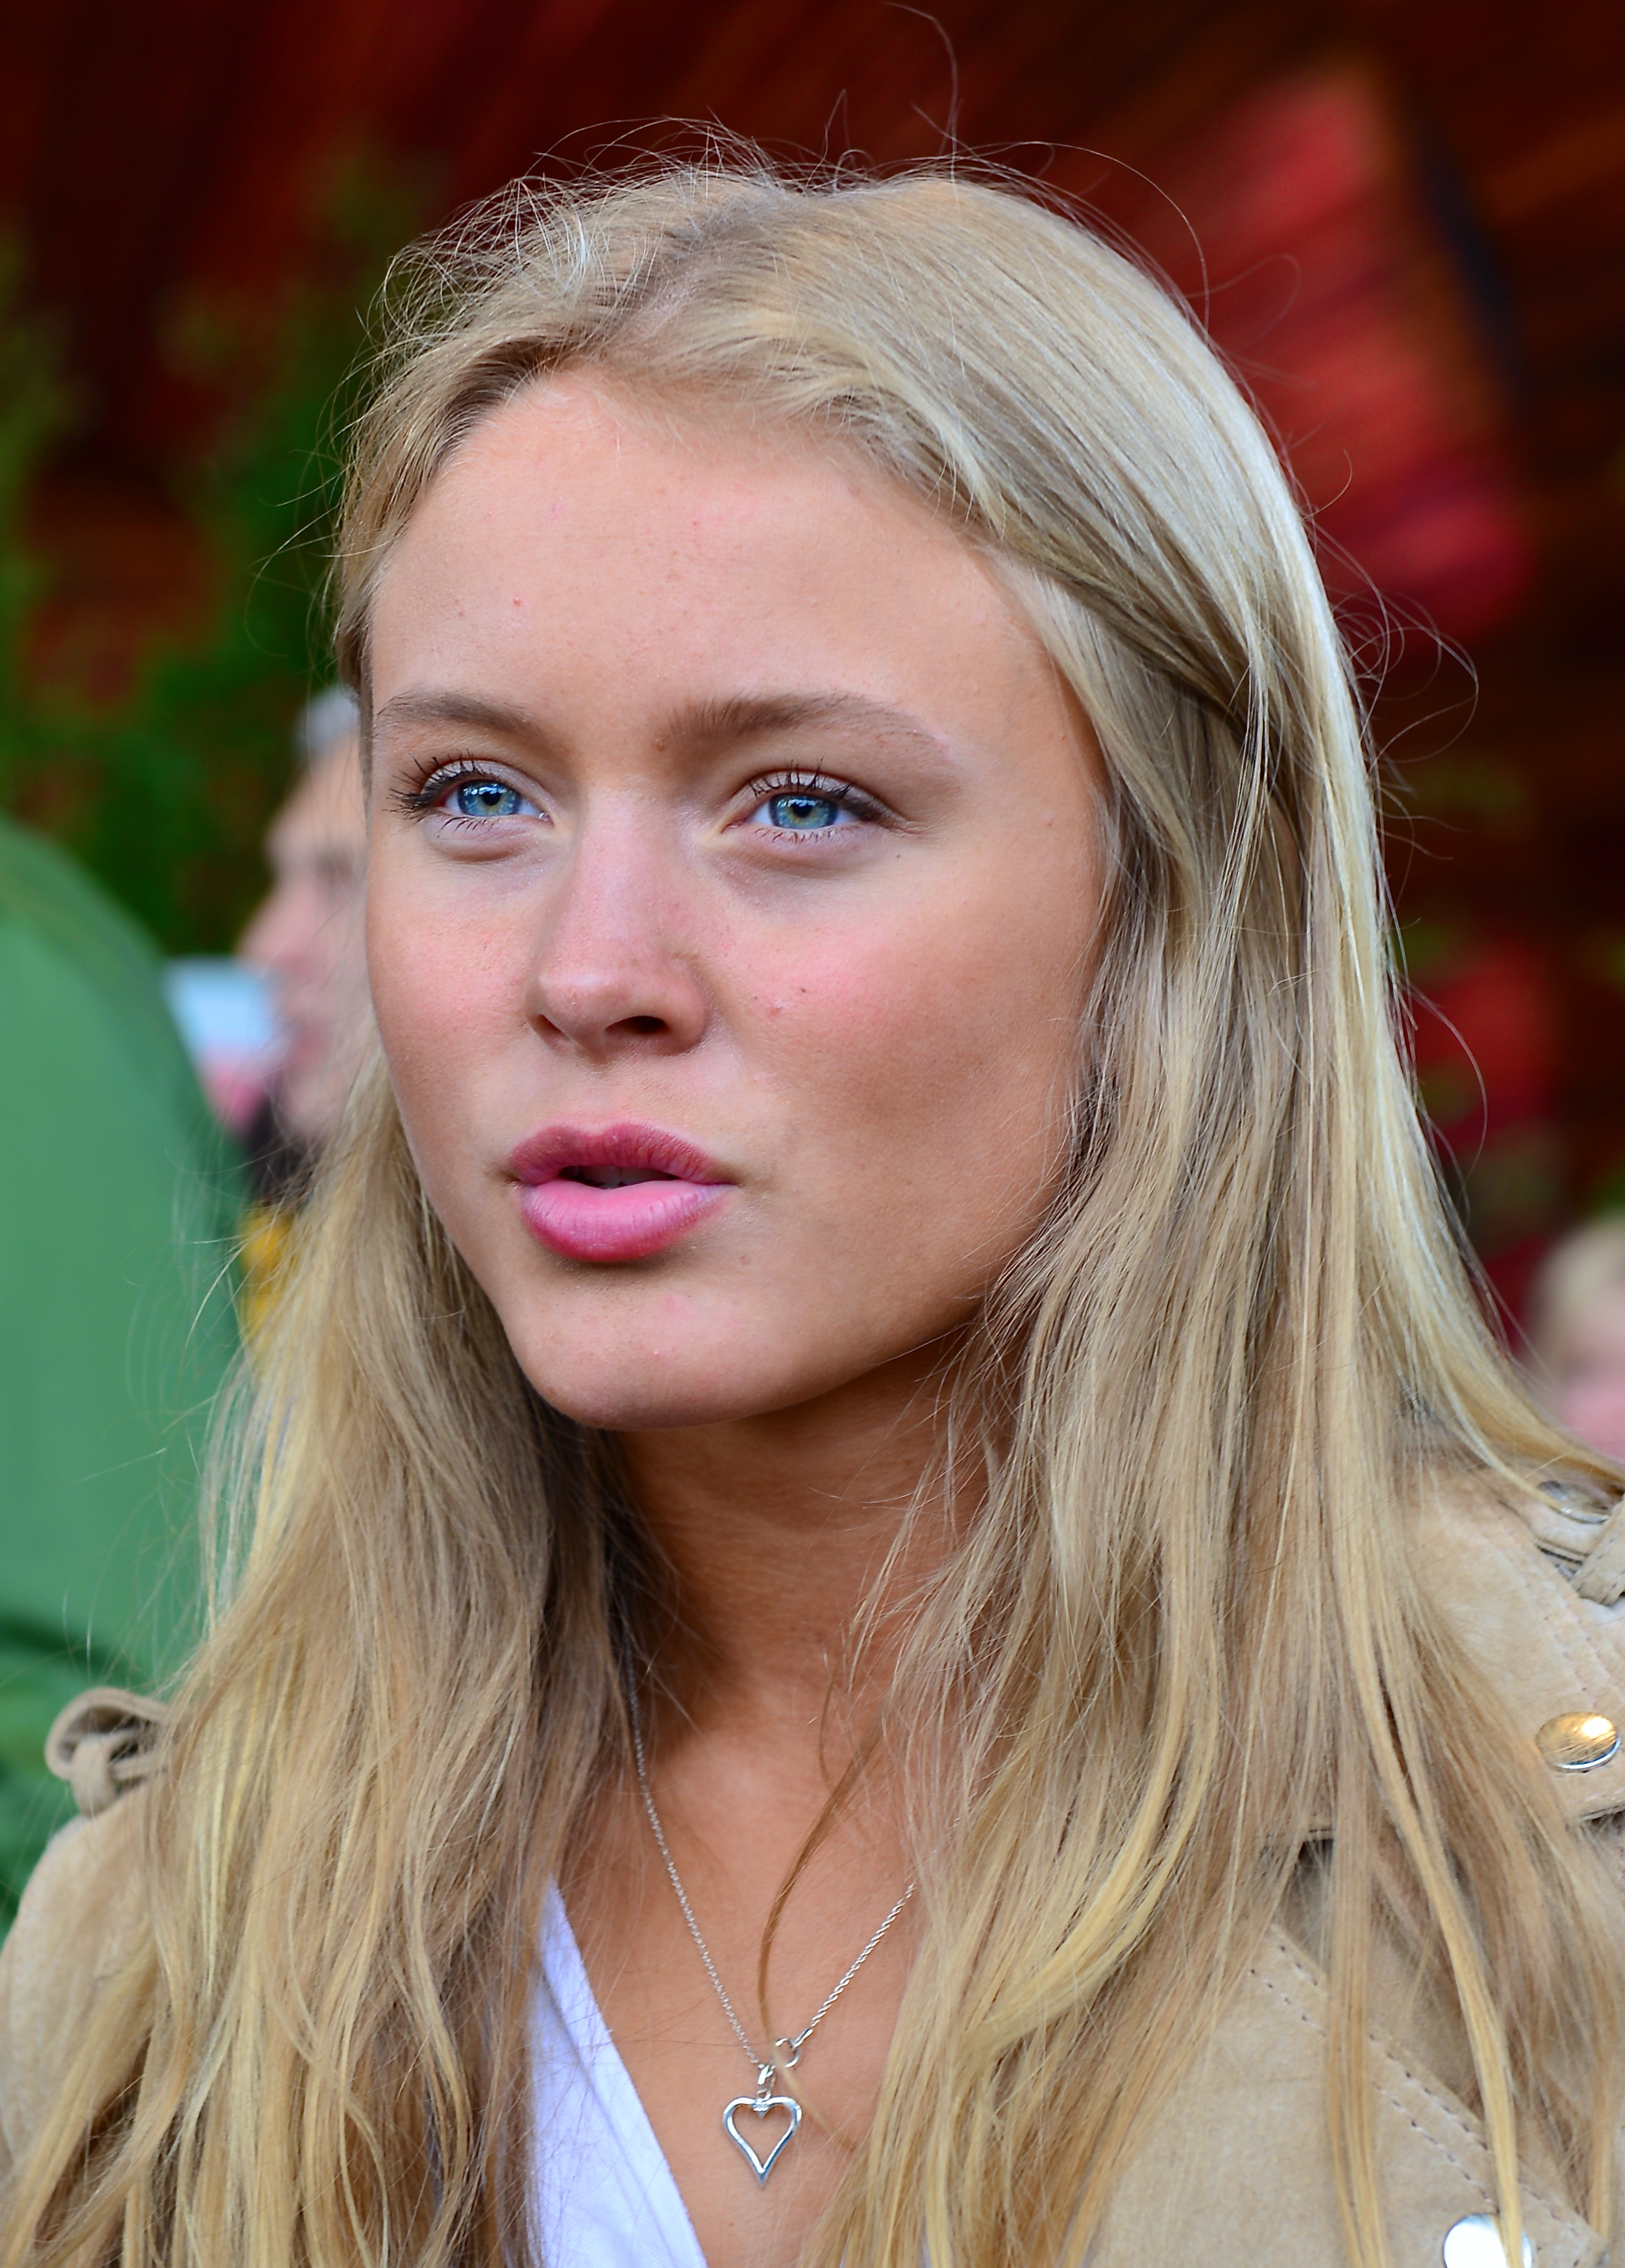 File:Zara Larsson i Allsång på Skansen 2013.jpg - Wikimedia Commons